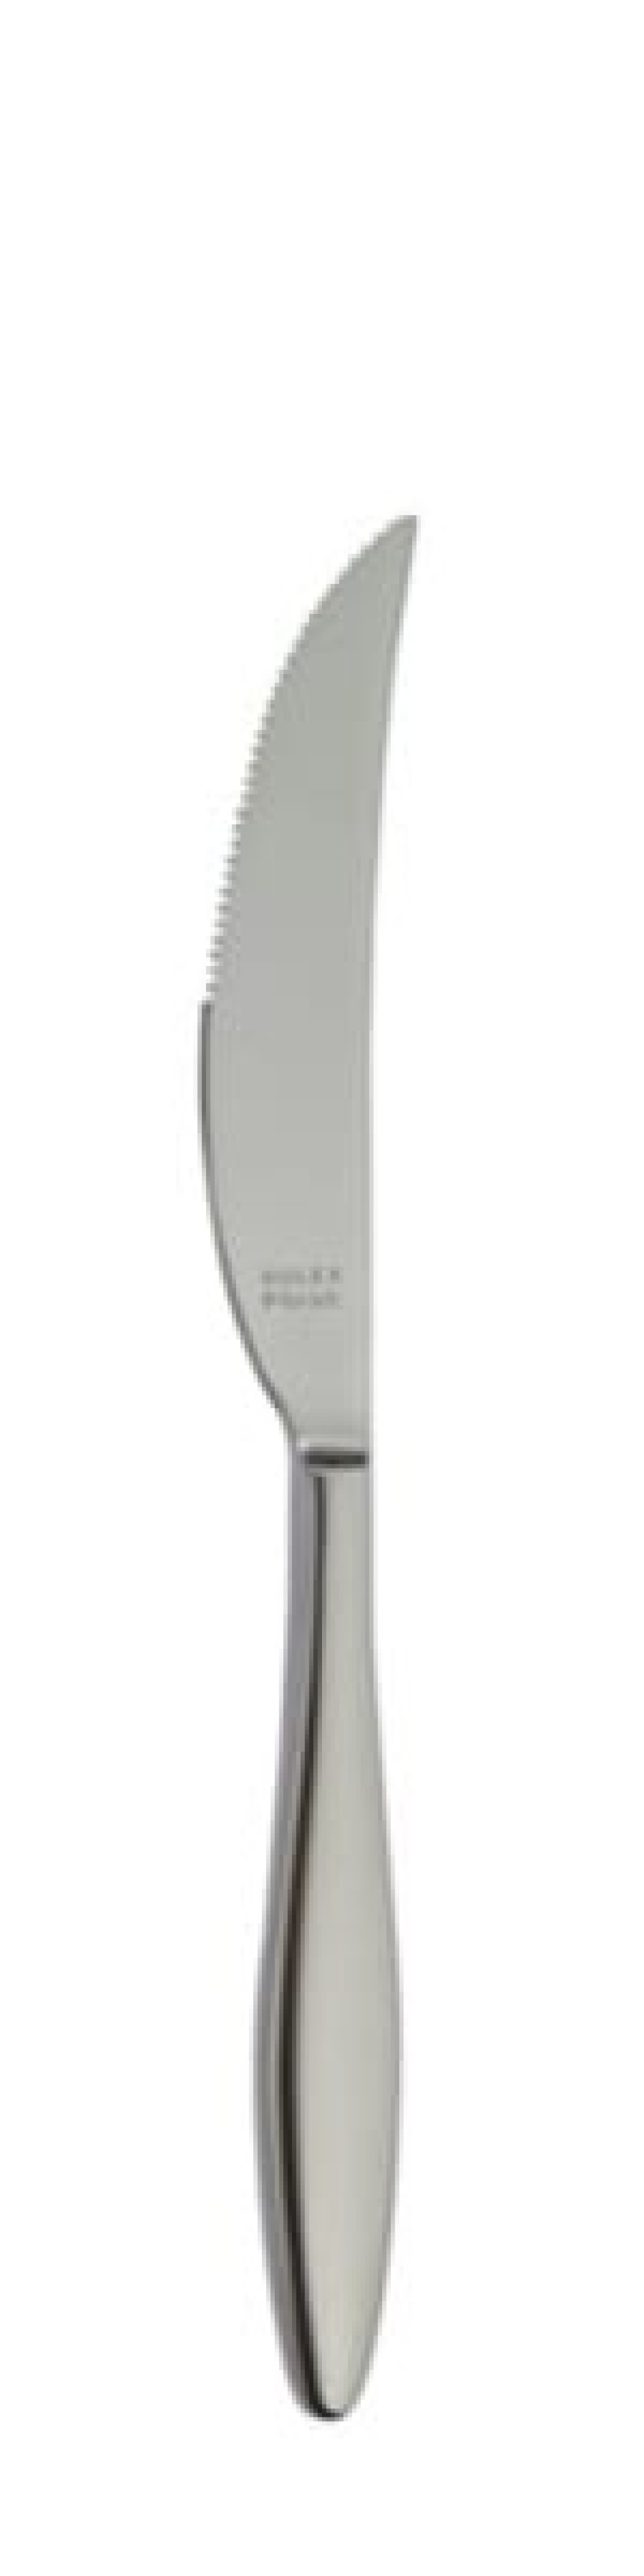 Terra Retro Stekkniv 239 mm - Solex i gruppen Dukning / Bestick / Knivar hos KitchenLab (1284-21663)